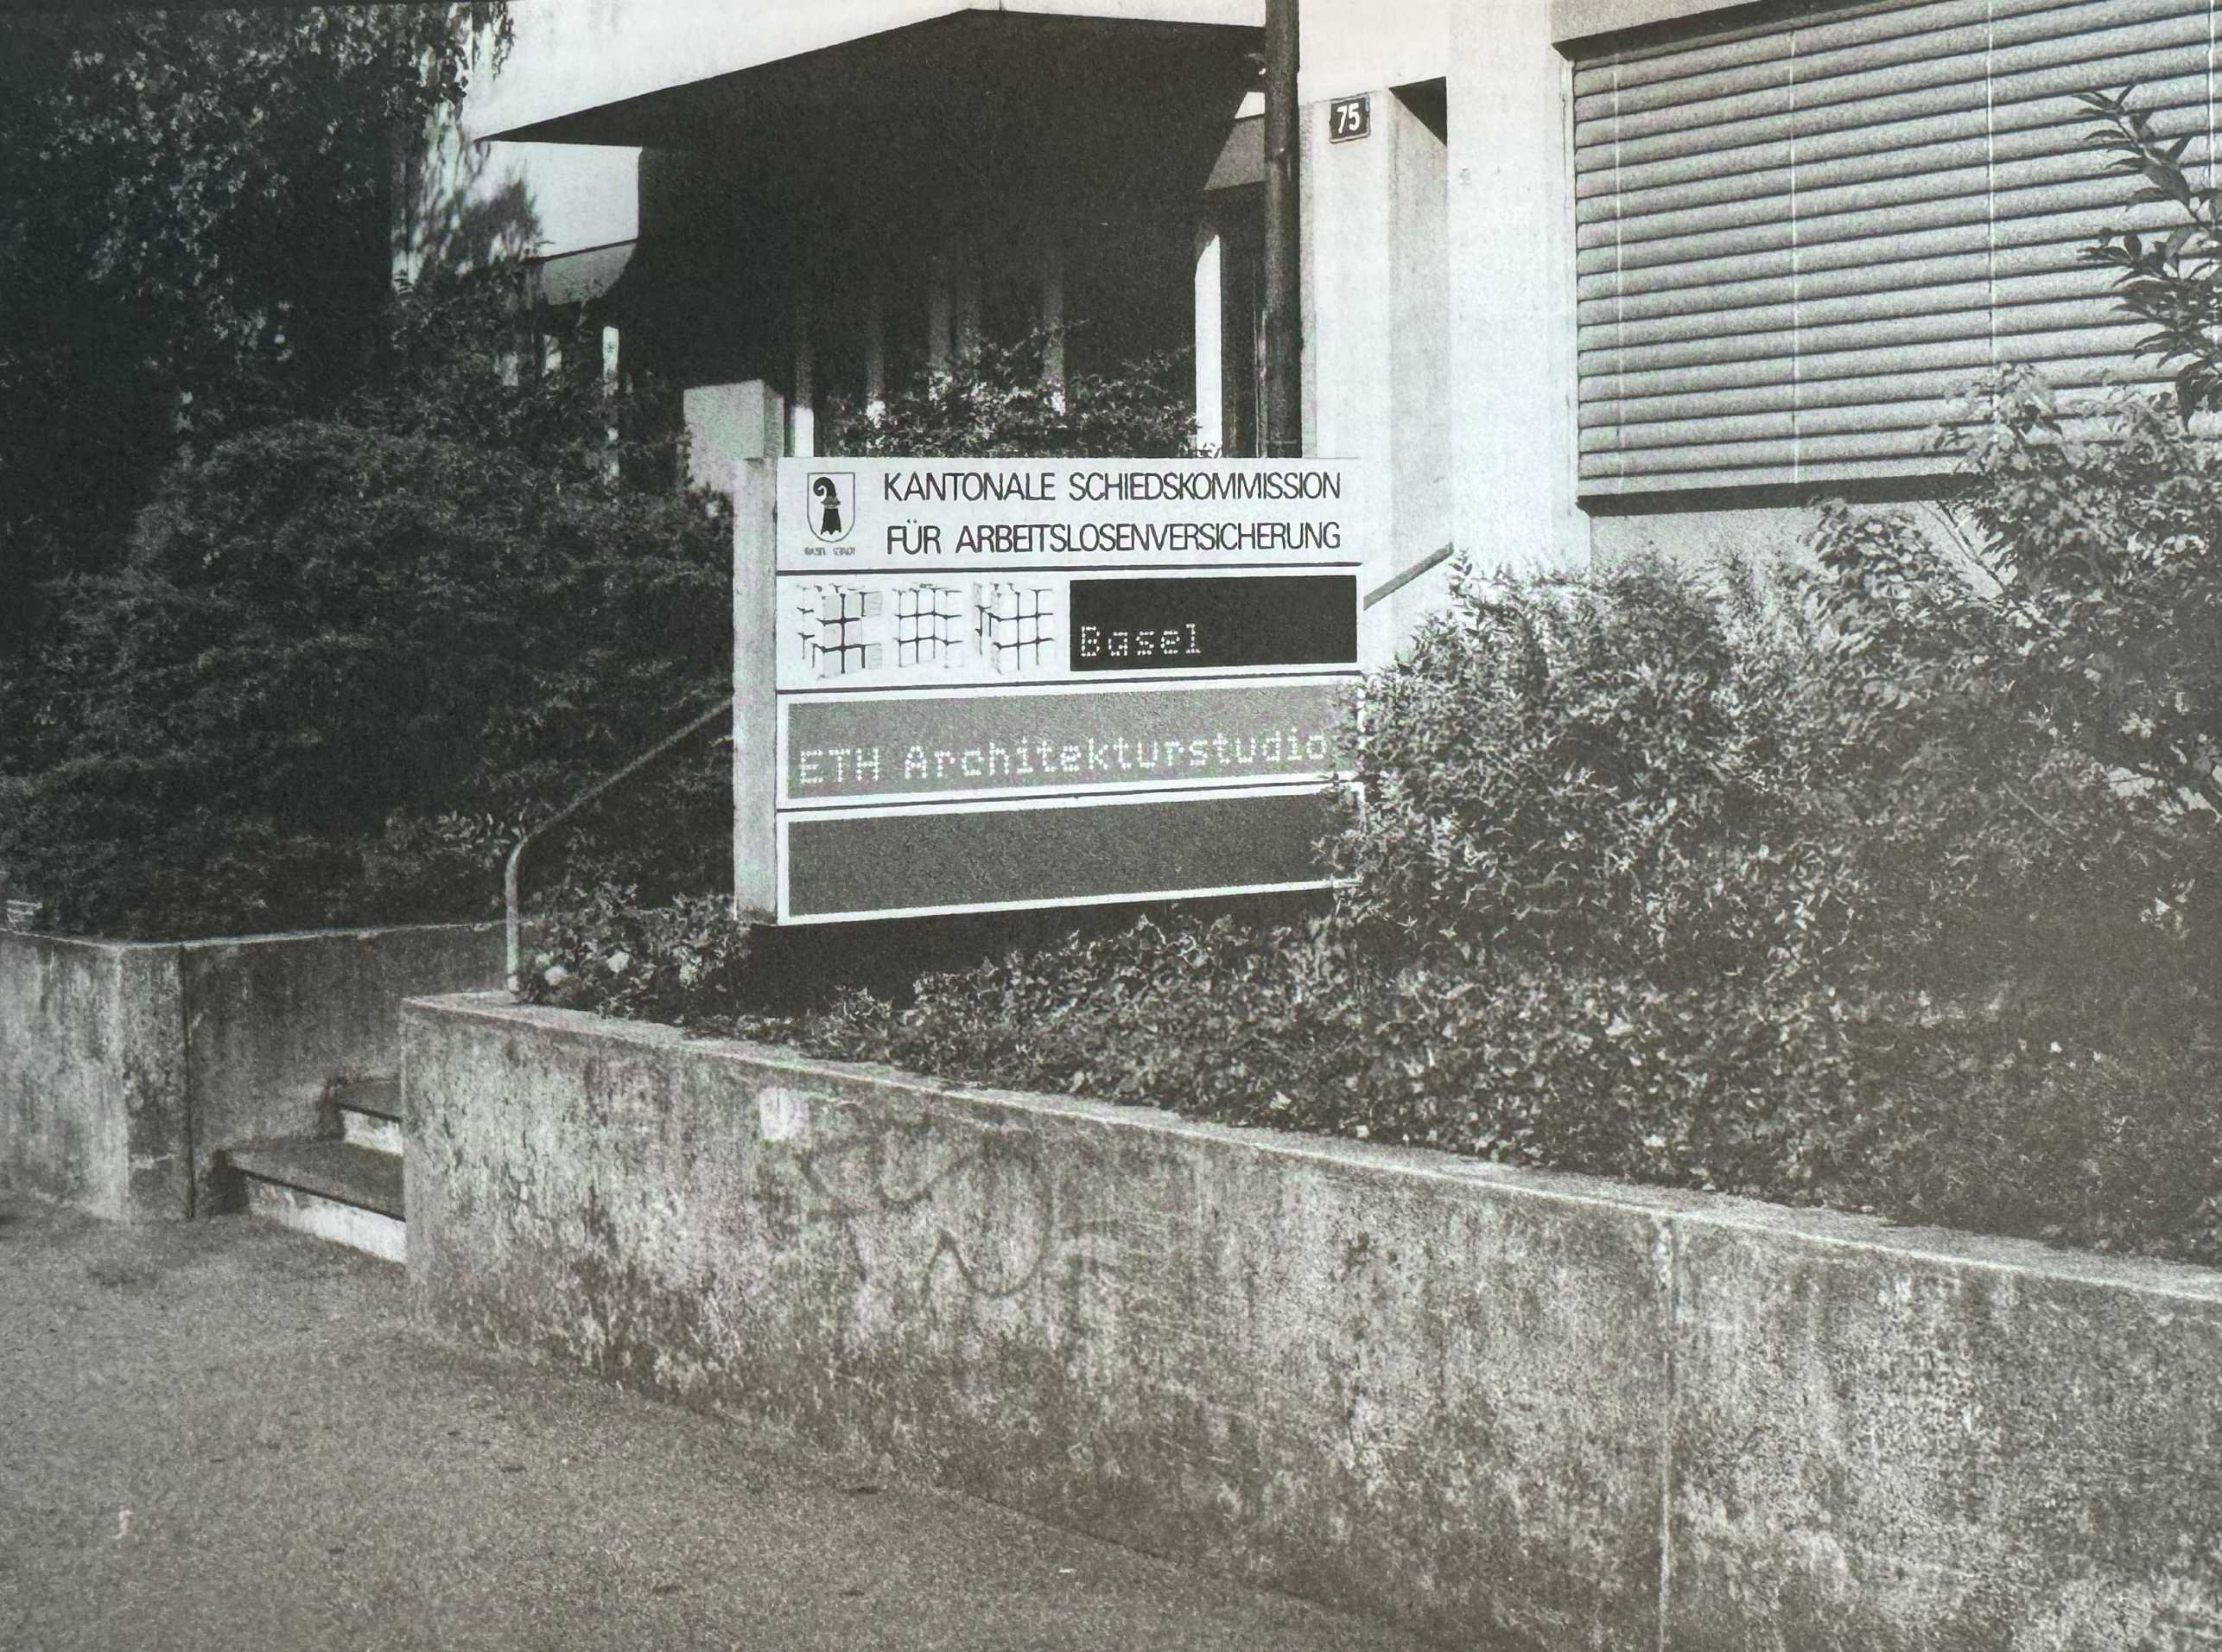 Das Foto aus dem Jahrbuch des D-ARCH von 2000 zeigt die erste Adresse des ETH Studio Basel.